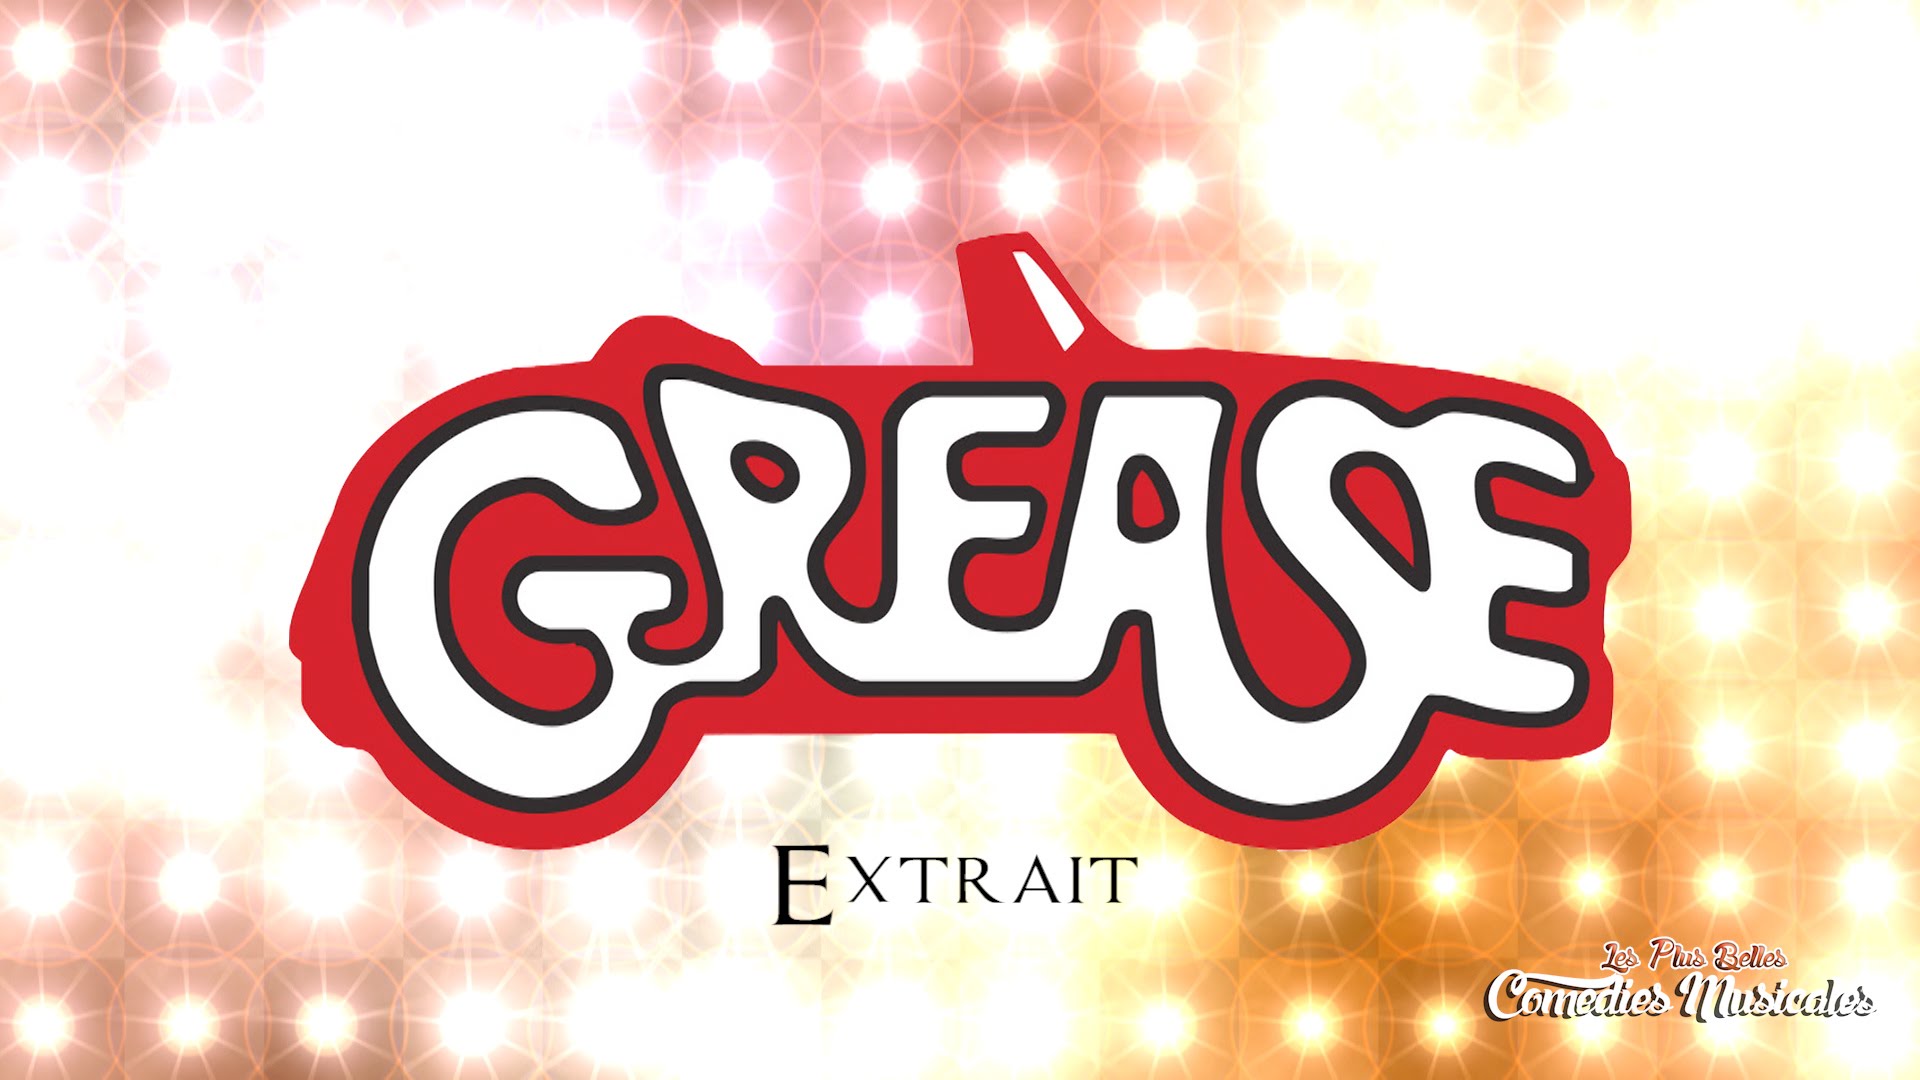 Grease : extraits dans Les plus belles comédies musicales vers Avignon